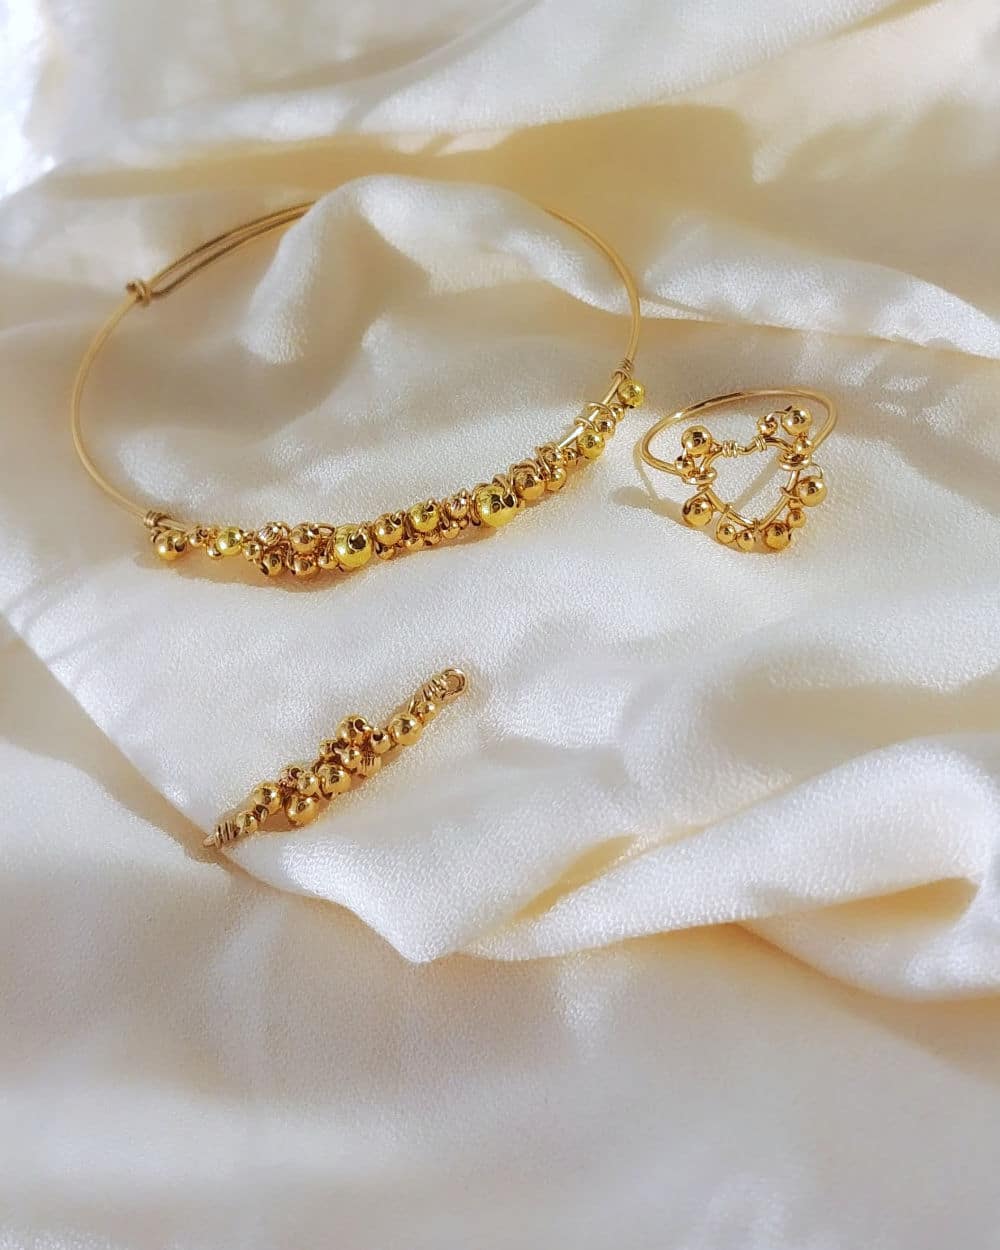 bague et bracelet coeur tissage broderie perles fait main or fil gold filled bijoux createur instagram france fait main